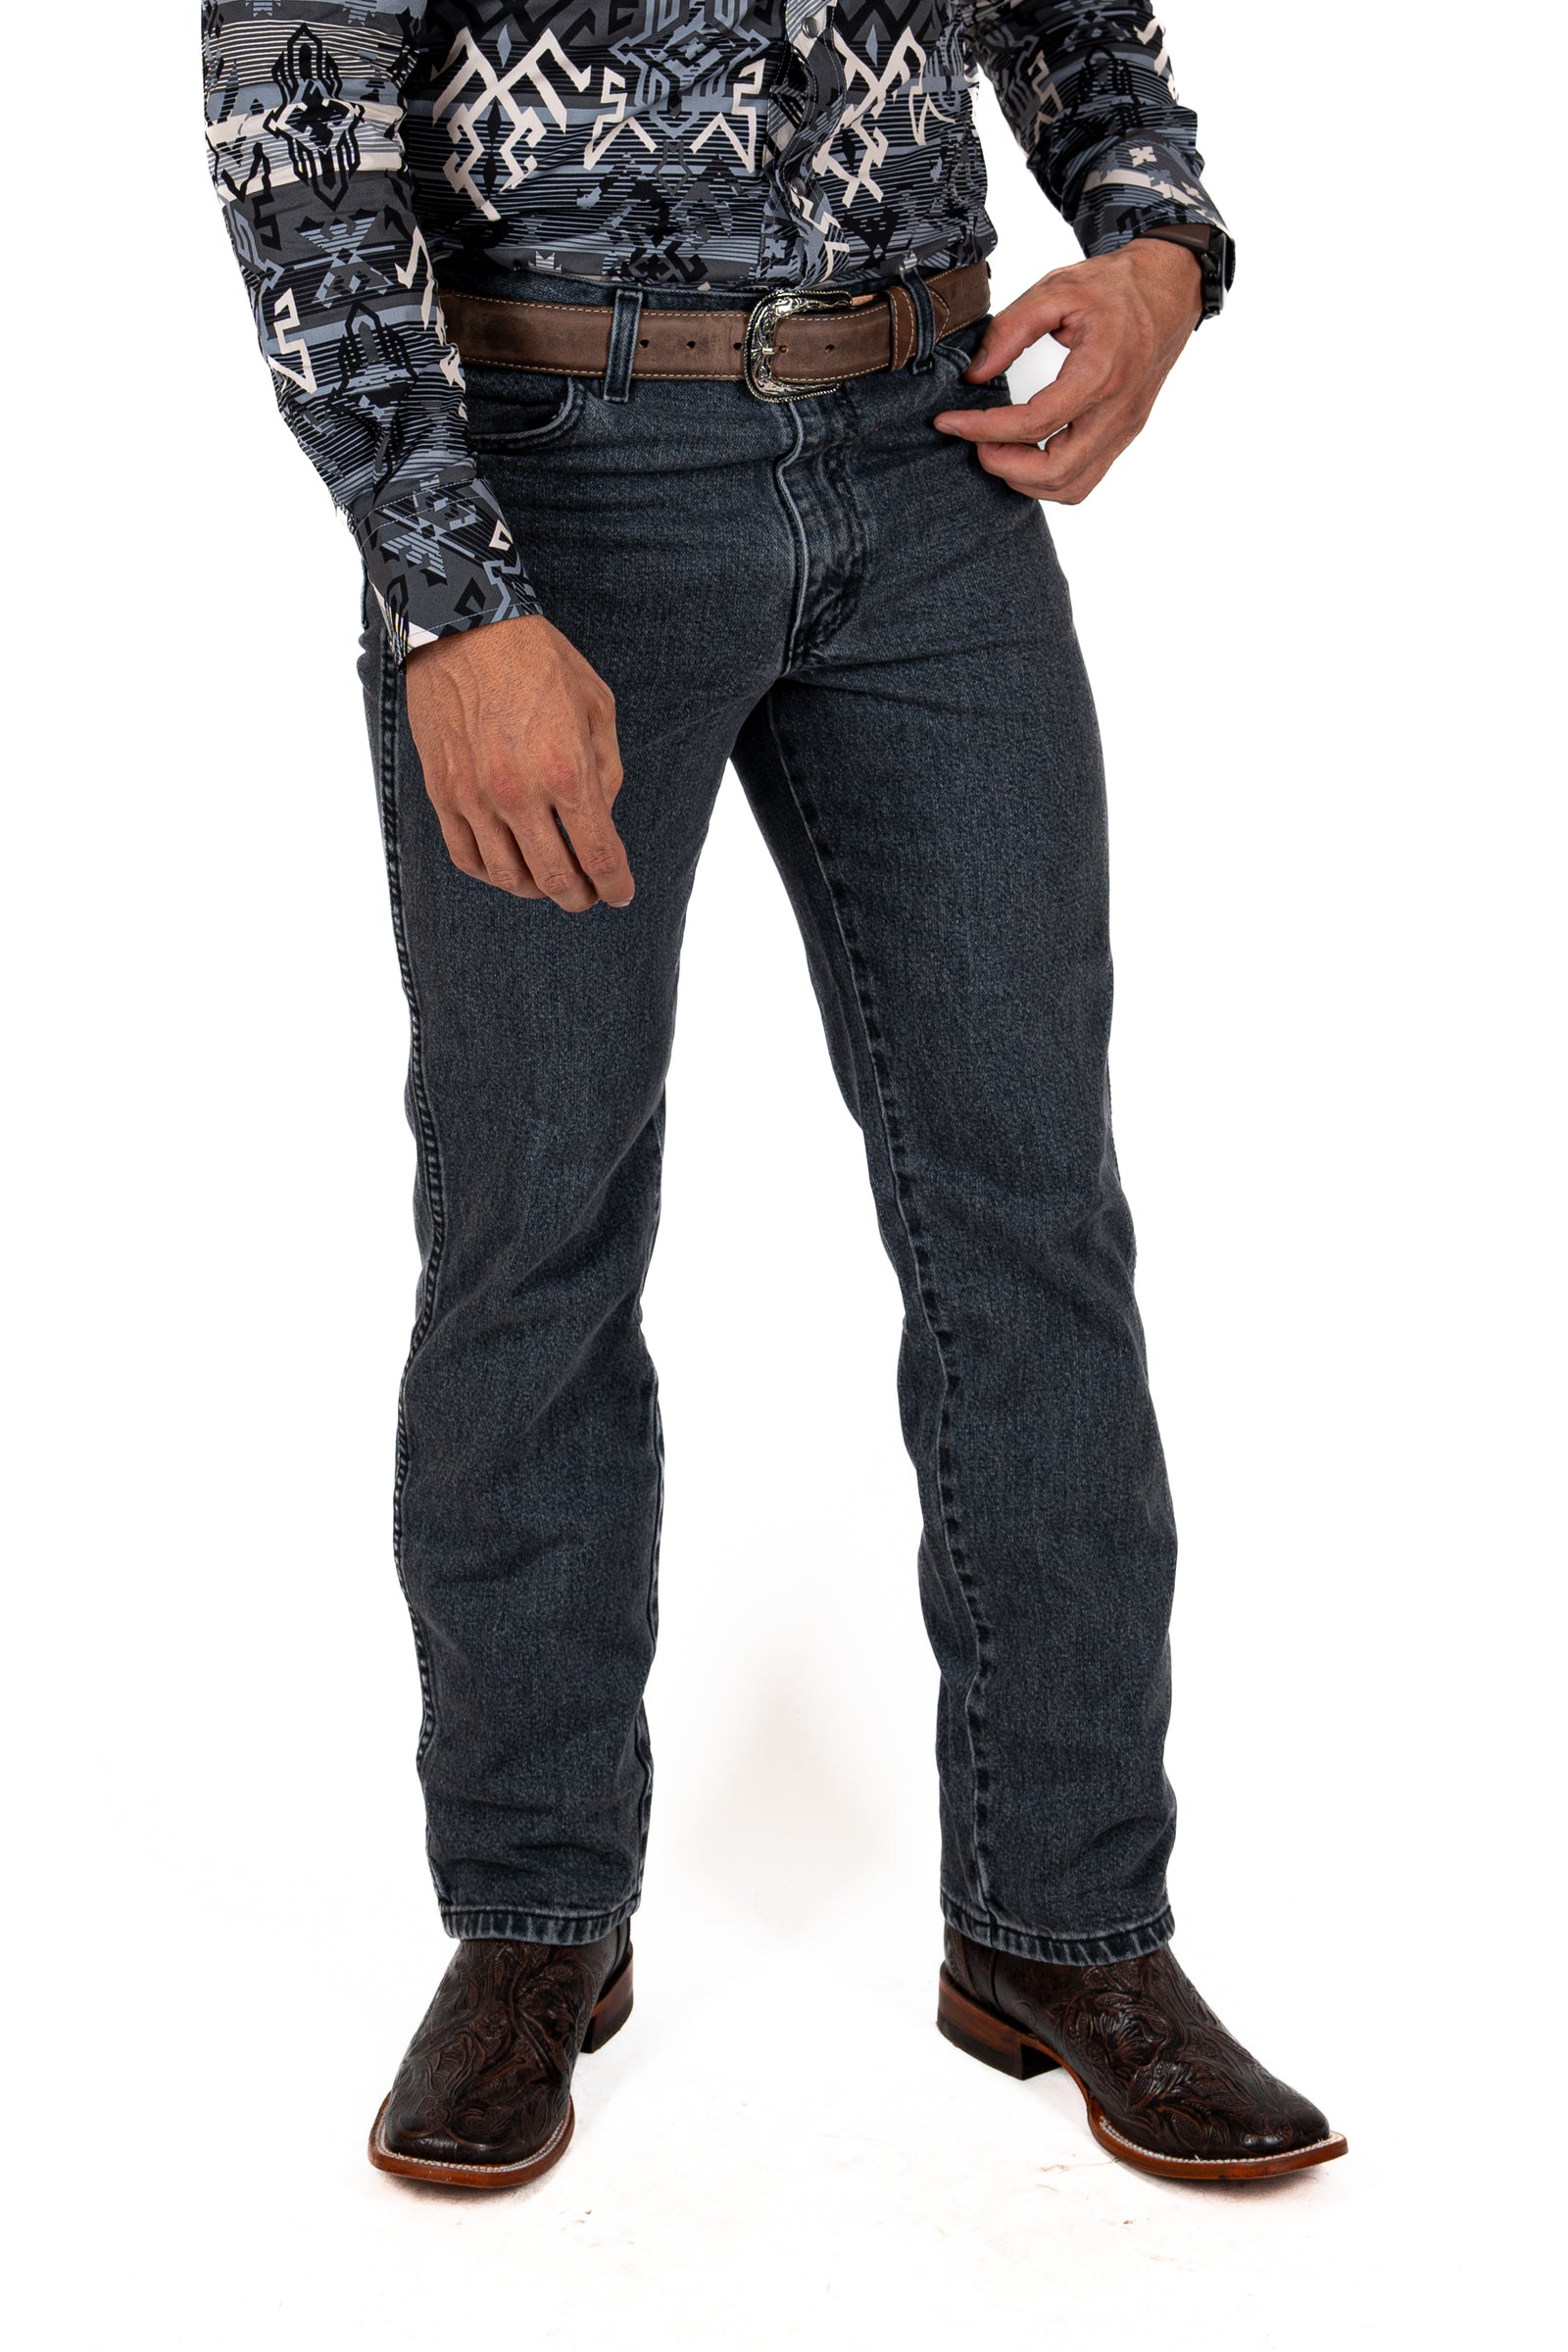 Jeans Wrangler Gris Silver Edition Caballero